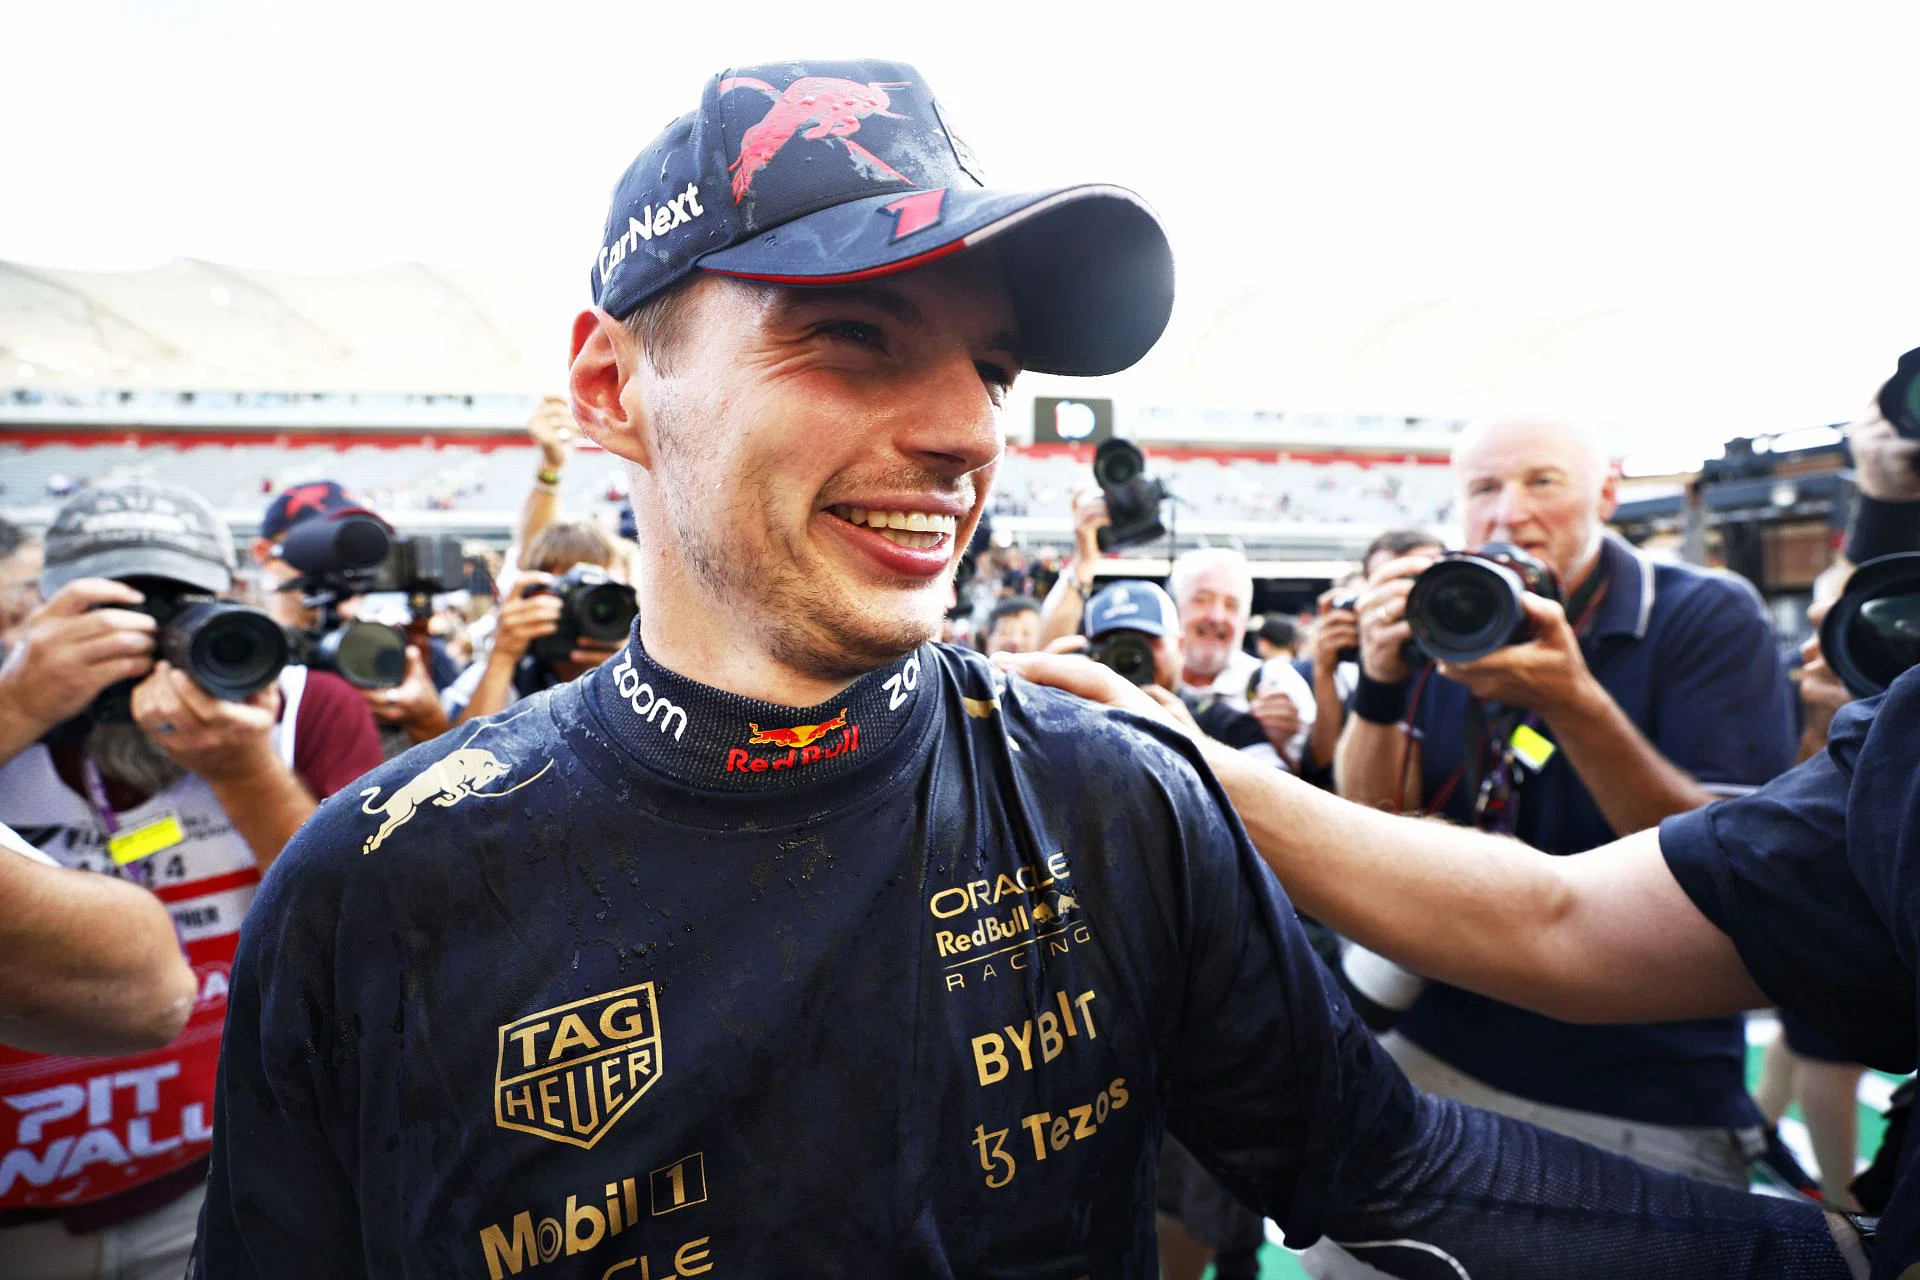 Босс Red Bull раскрыл черту, которая отличает Макса Ферстаппена от всех других пилотов Формулы-1